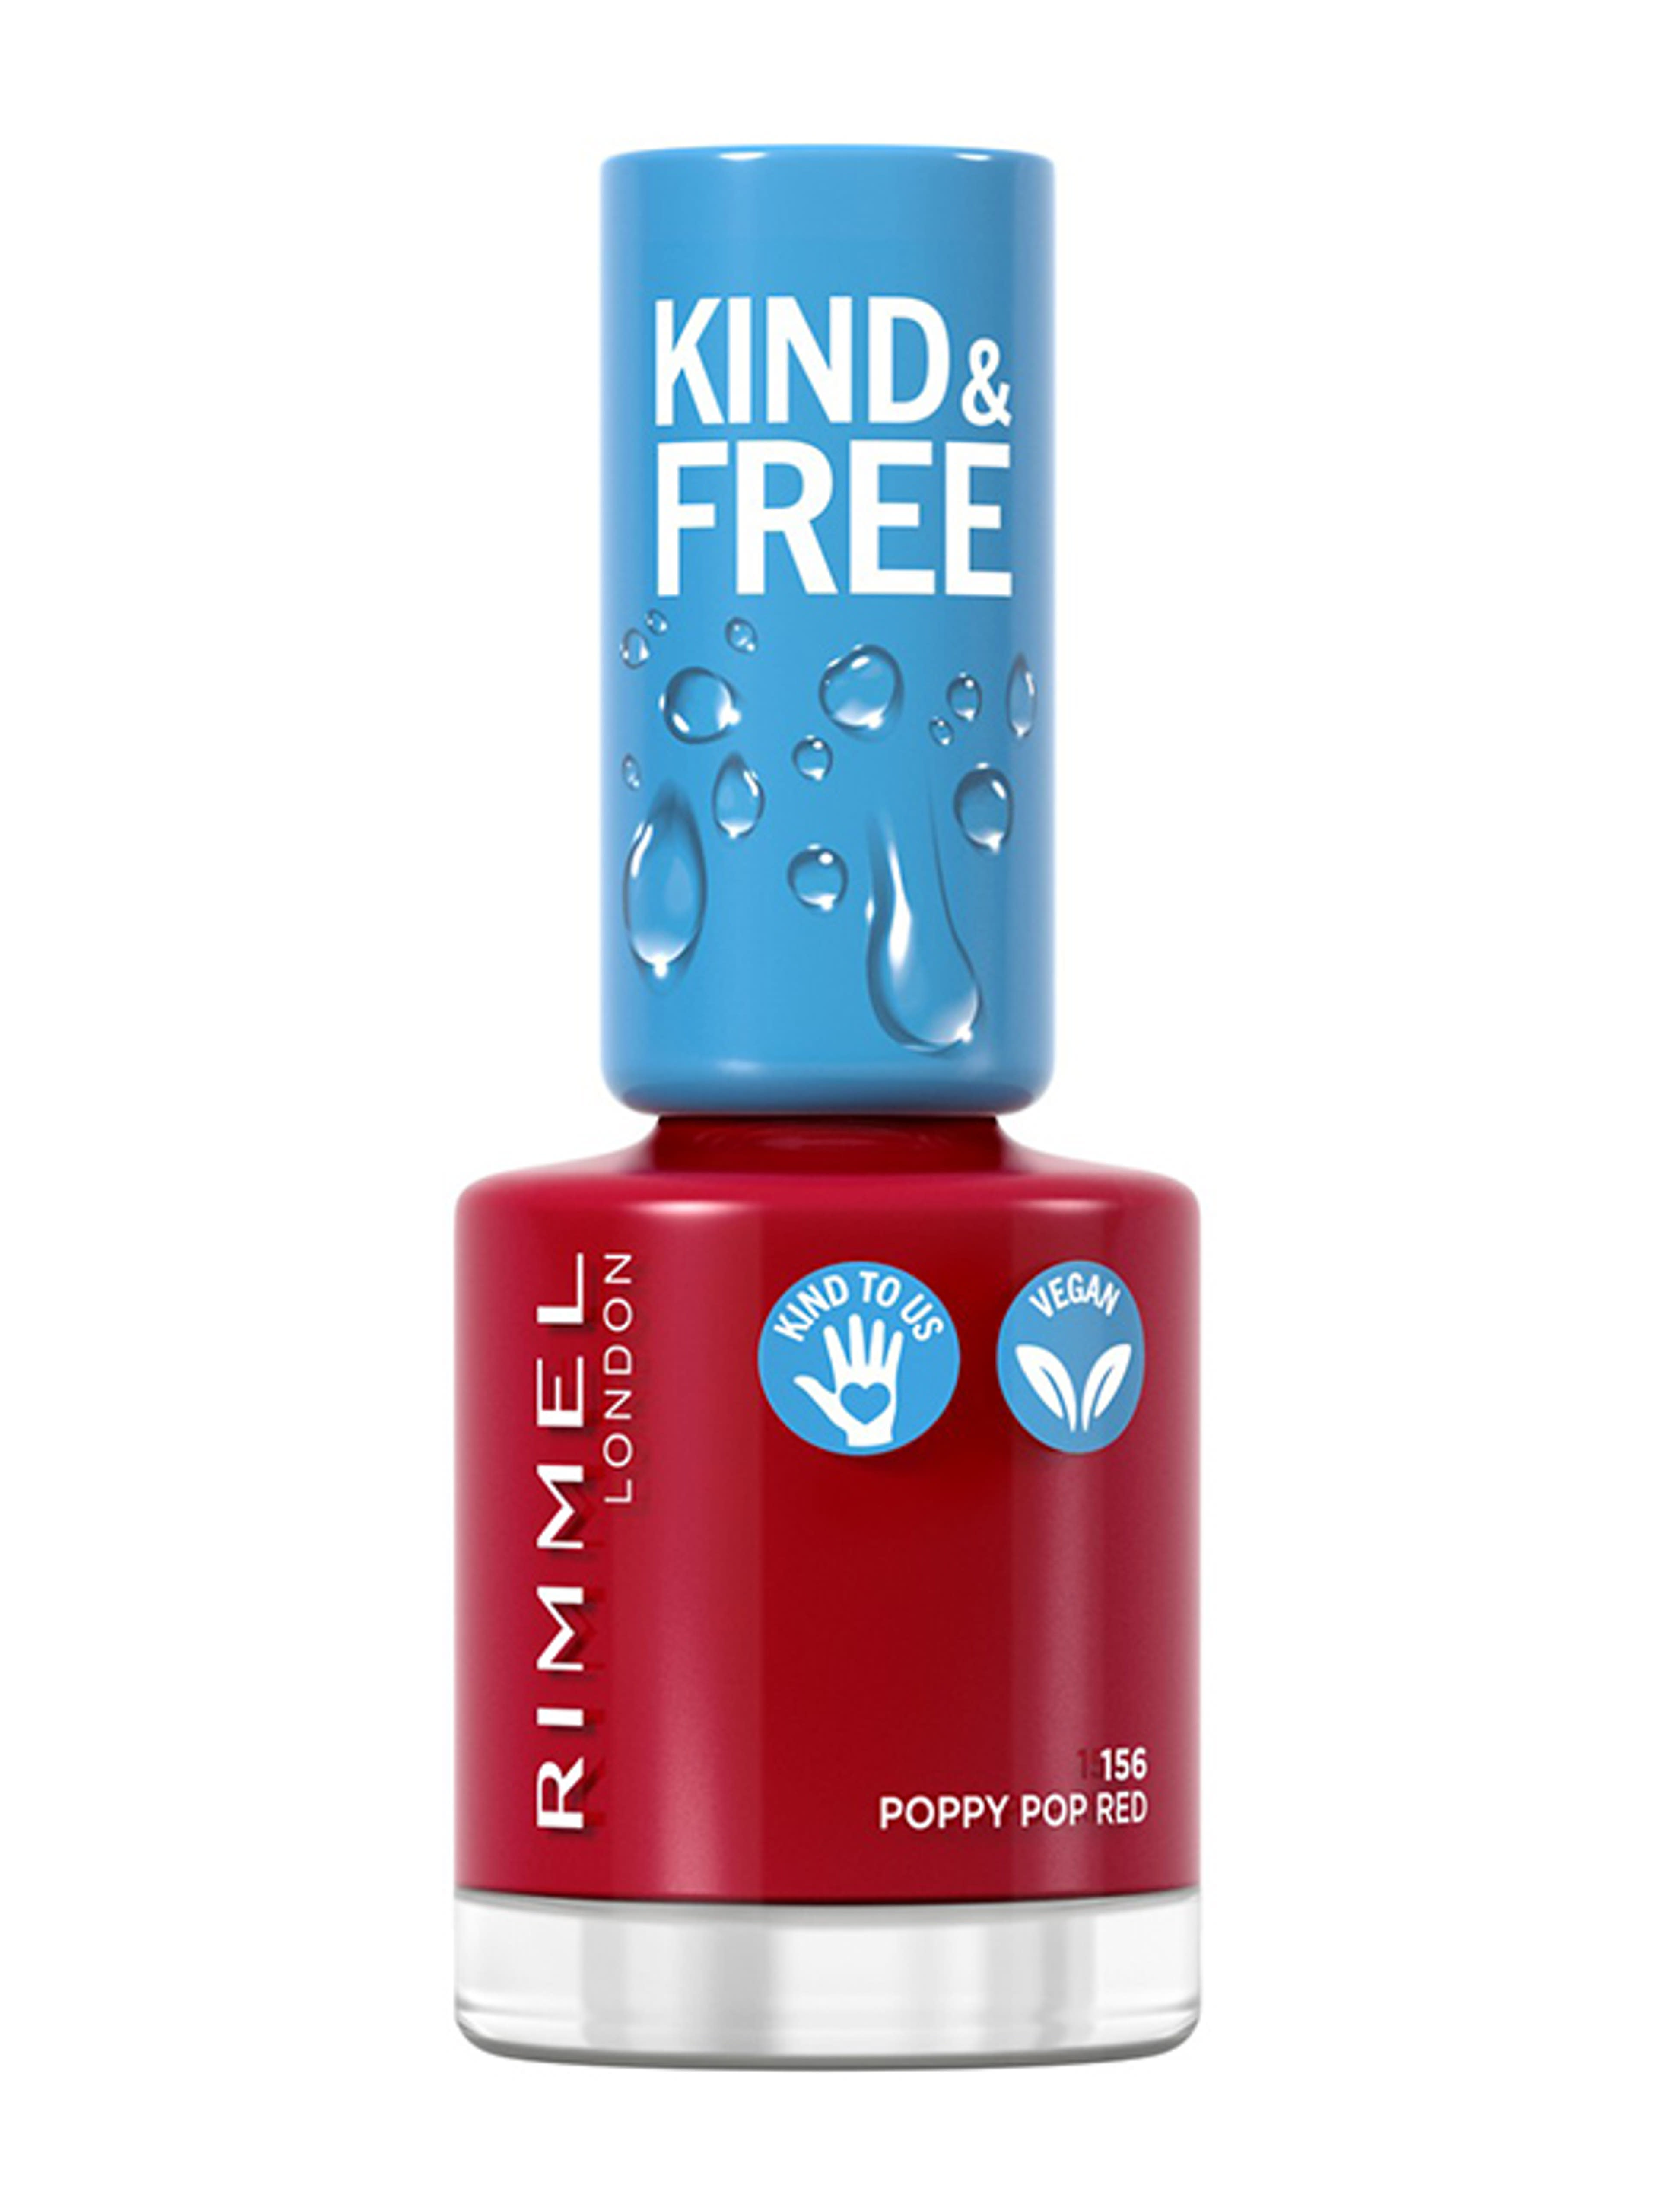 Rimmel Kind & Free körömlakk /156 - 1 db-1